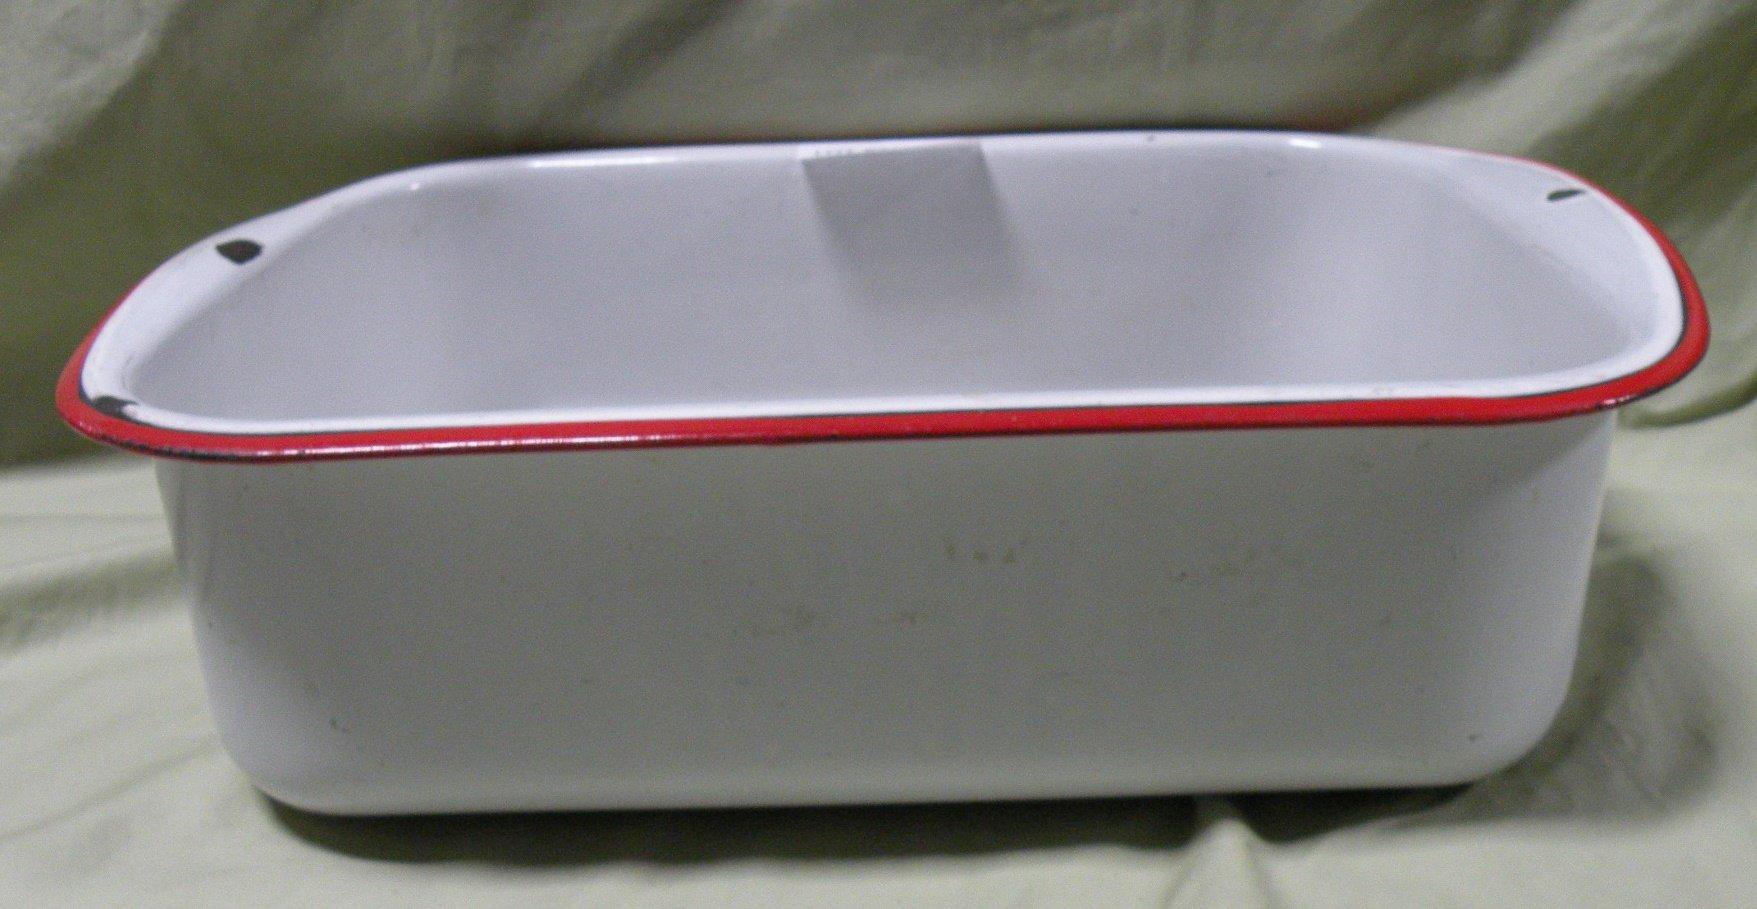 RED/WHITE ENAMEL RECTANGULAR PAN